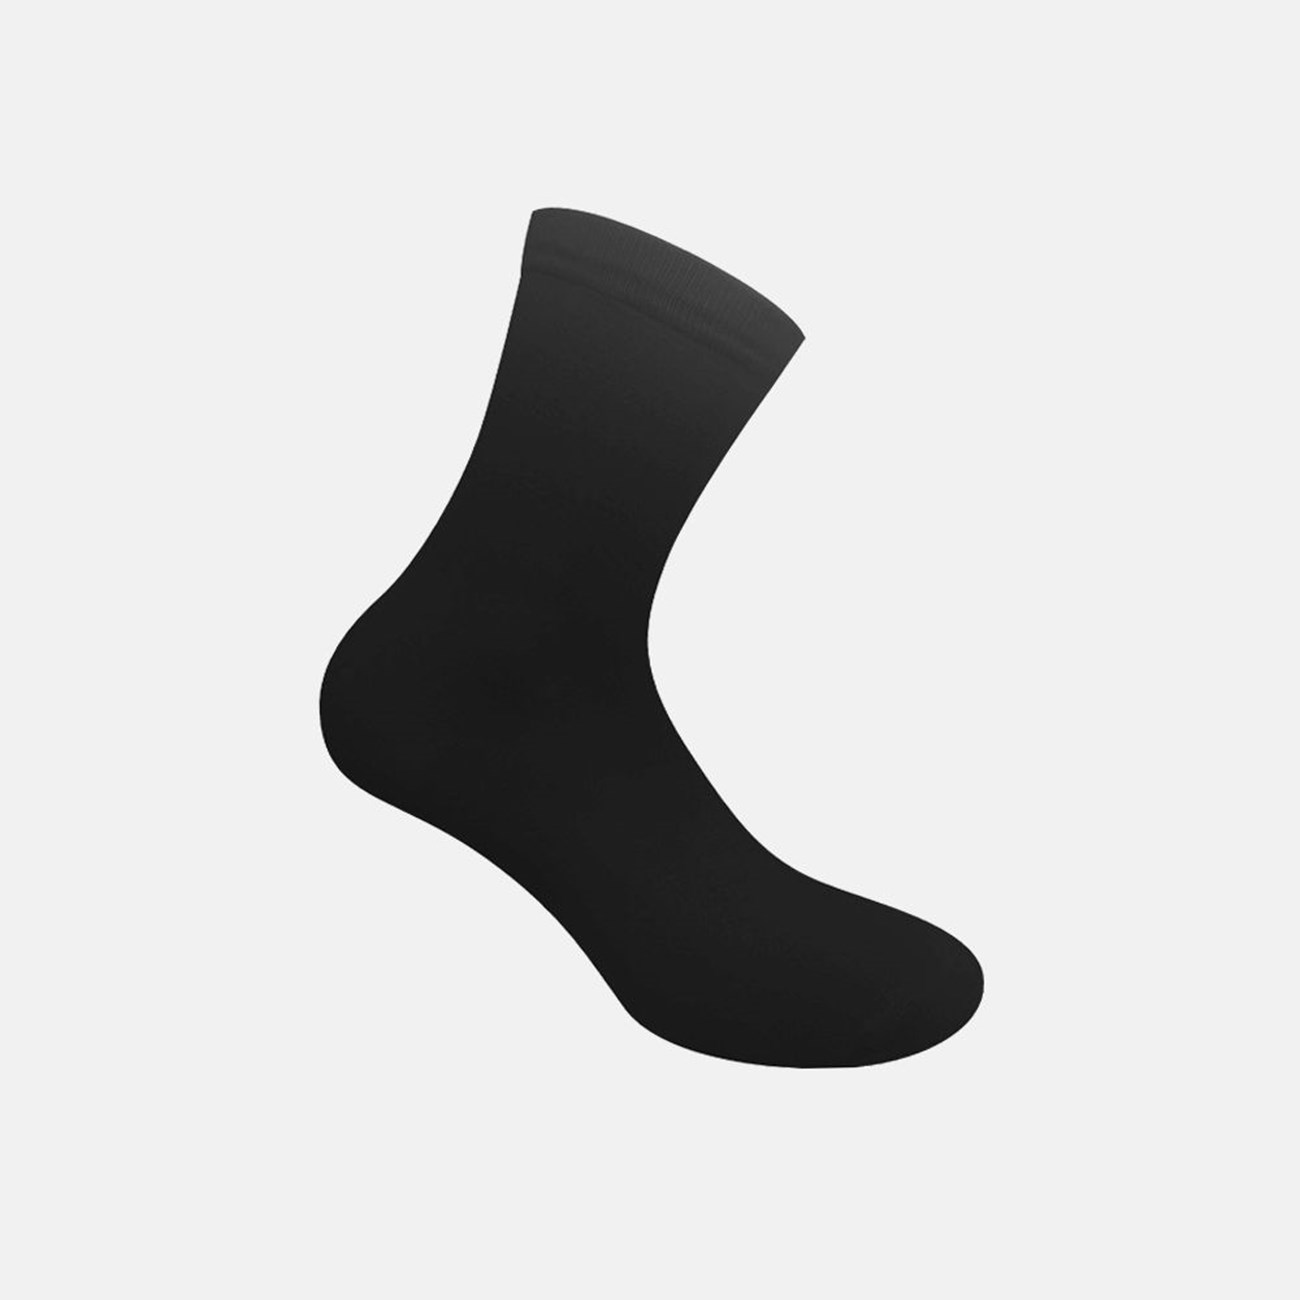   Γυναικείες Κάλτσες Bamboo W333-02 - The Athlete's Foot